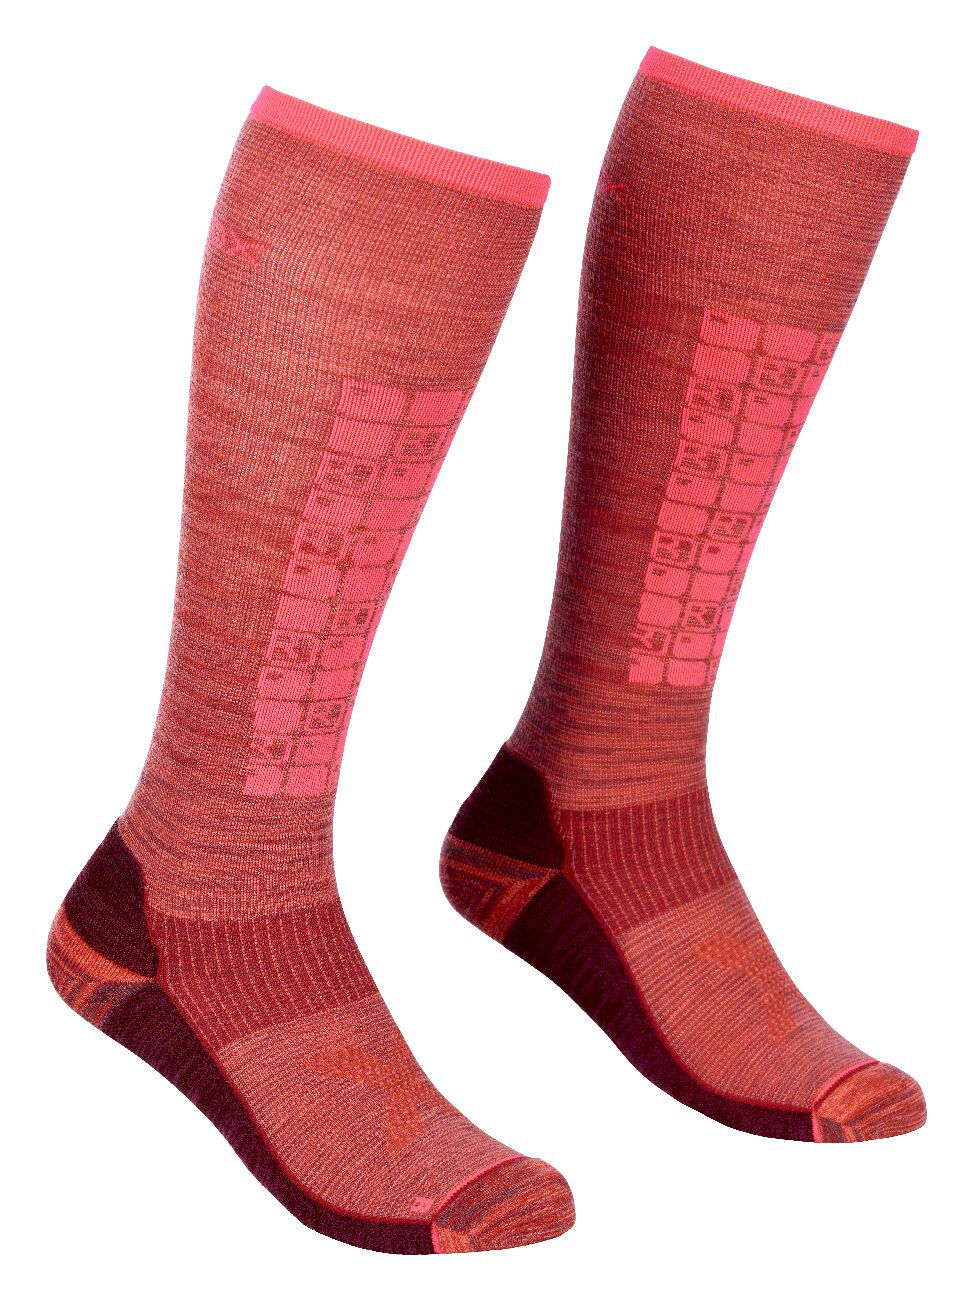 Ortovox Ski Compression Long Socks - Skisocken - Damen